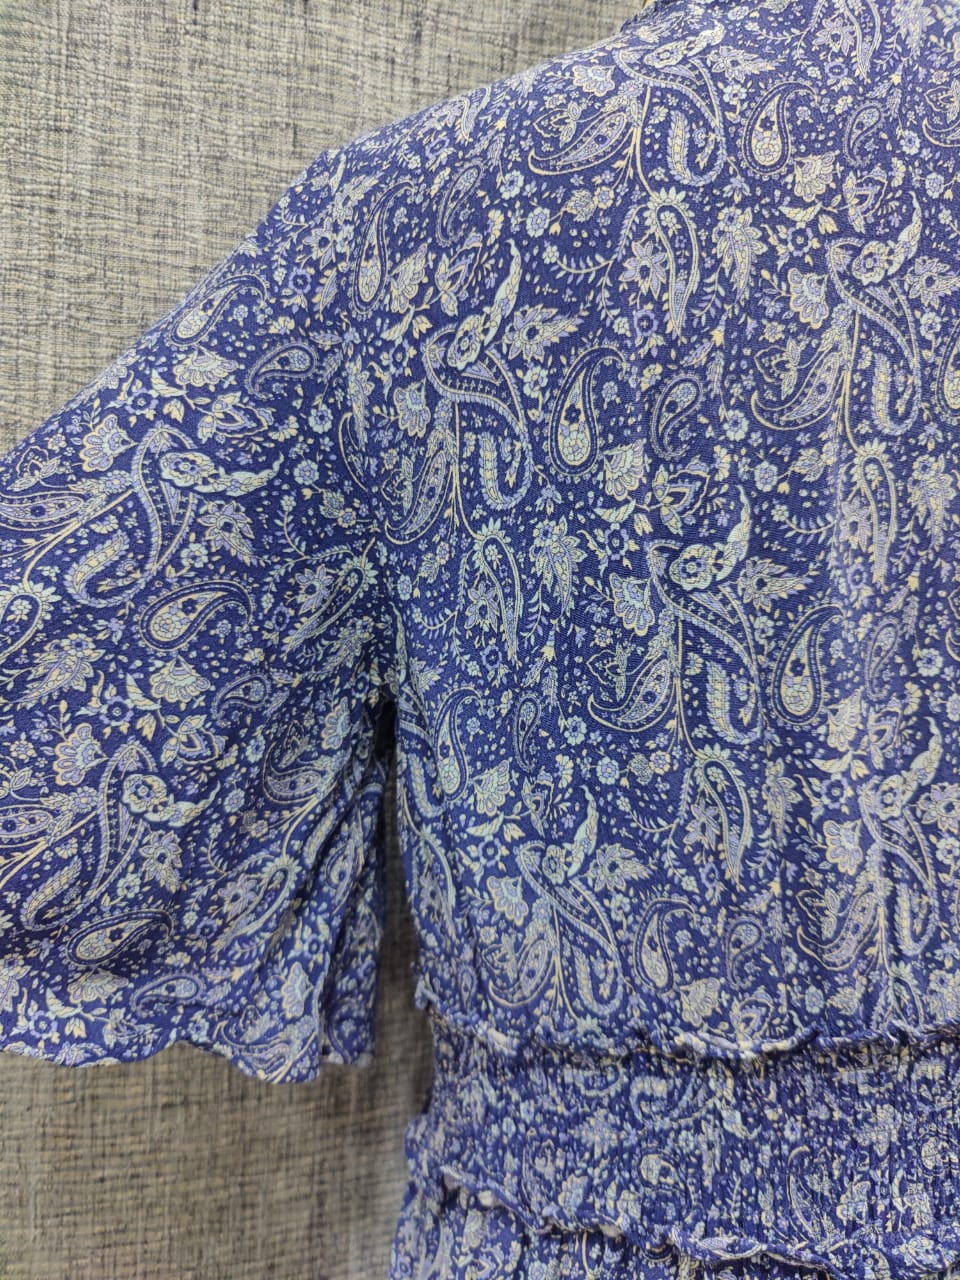 ZARA Printed Blue Long Dress | Relove